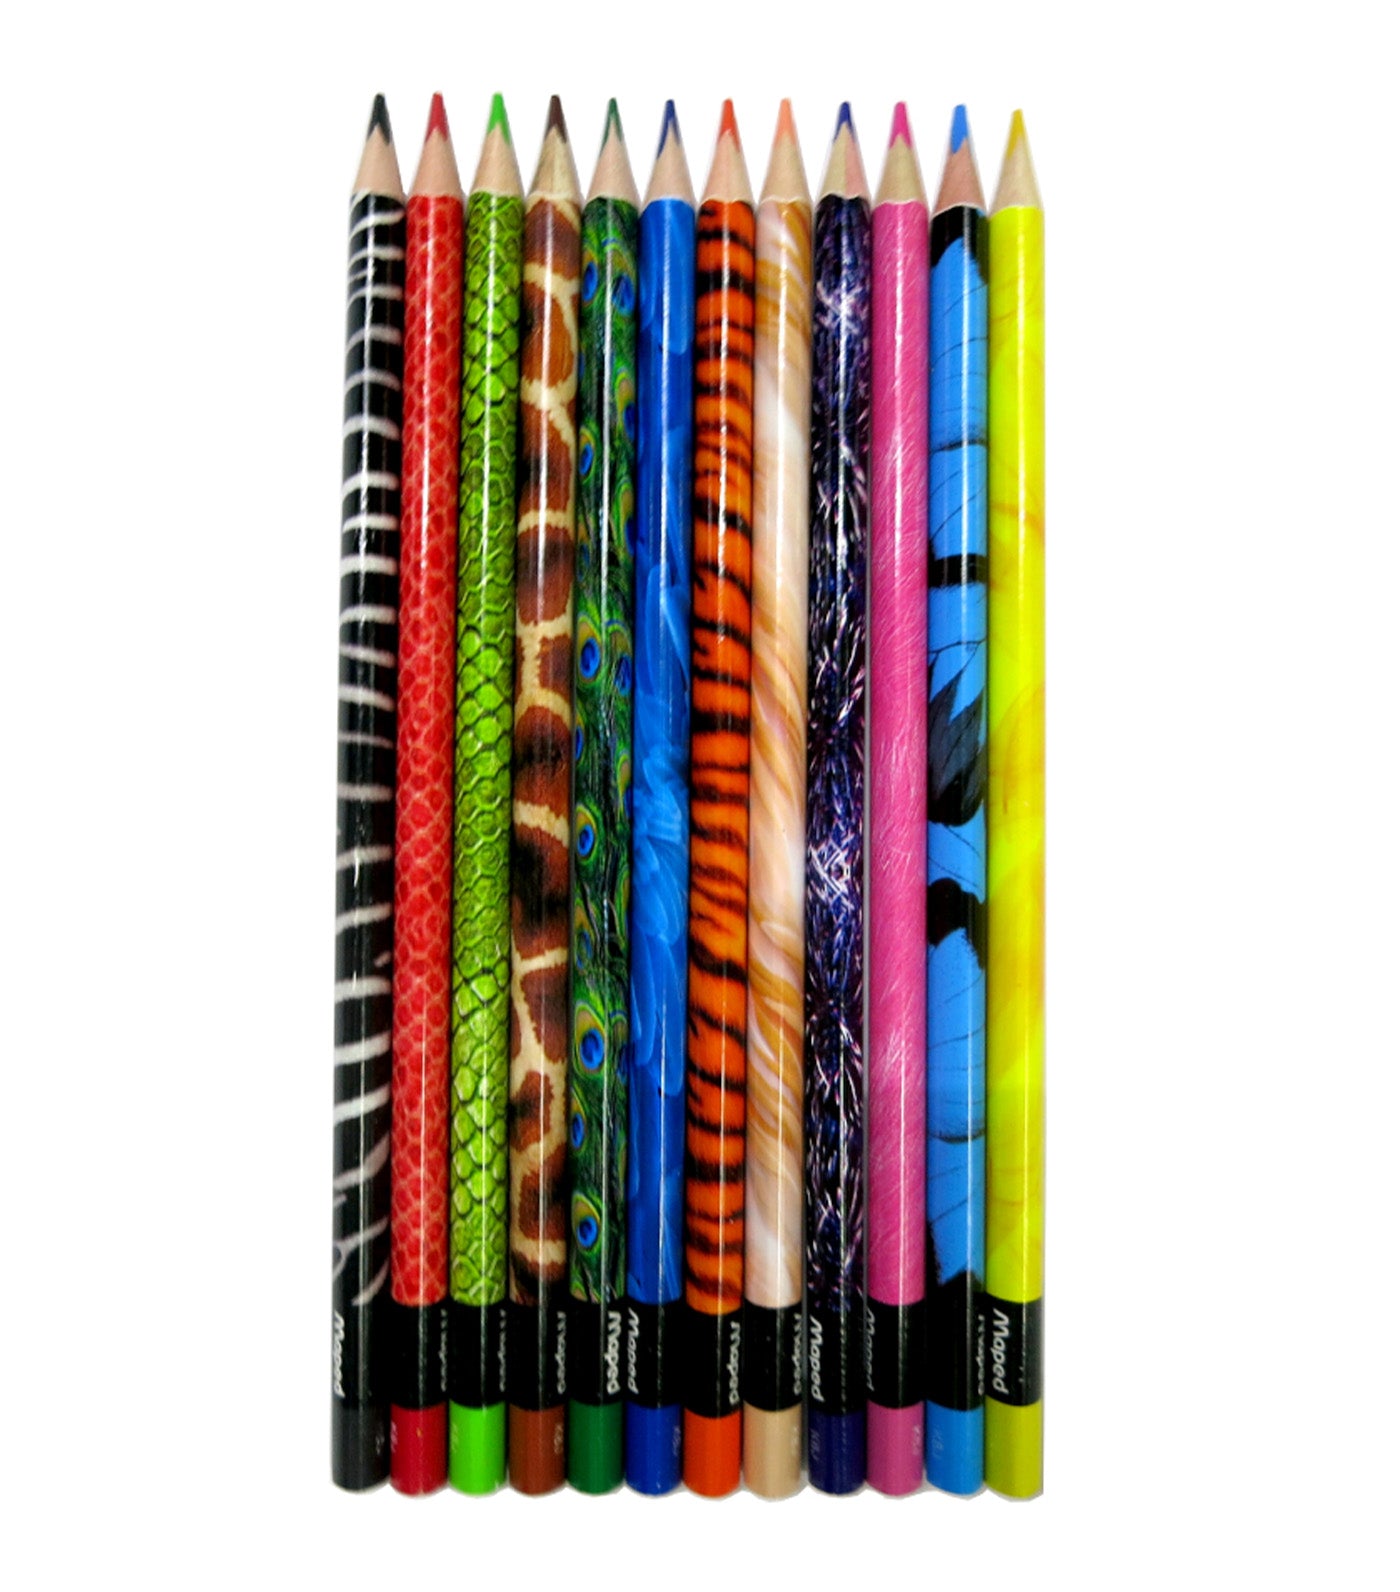 12 crayons de couleur incassable Maped Color'Peps Strong